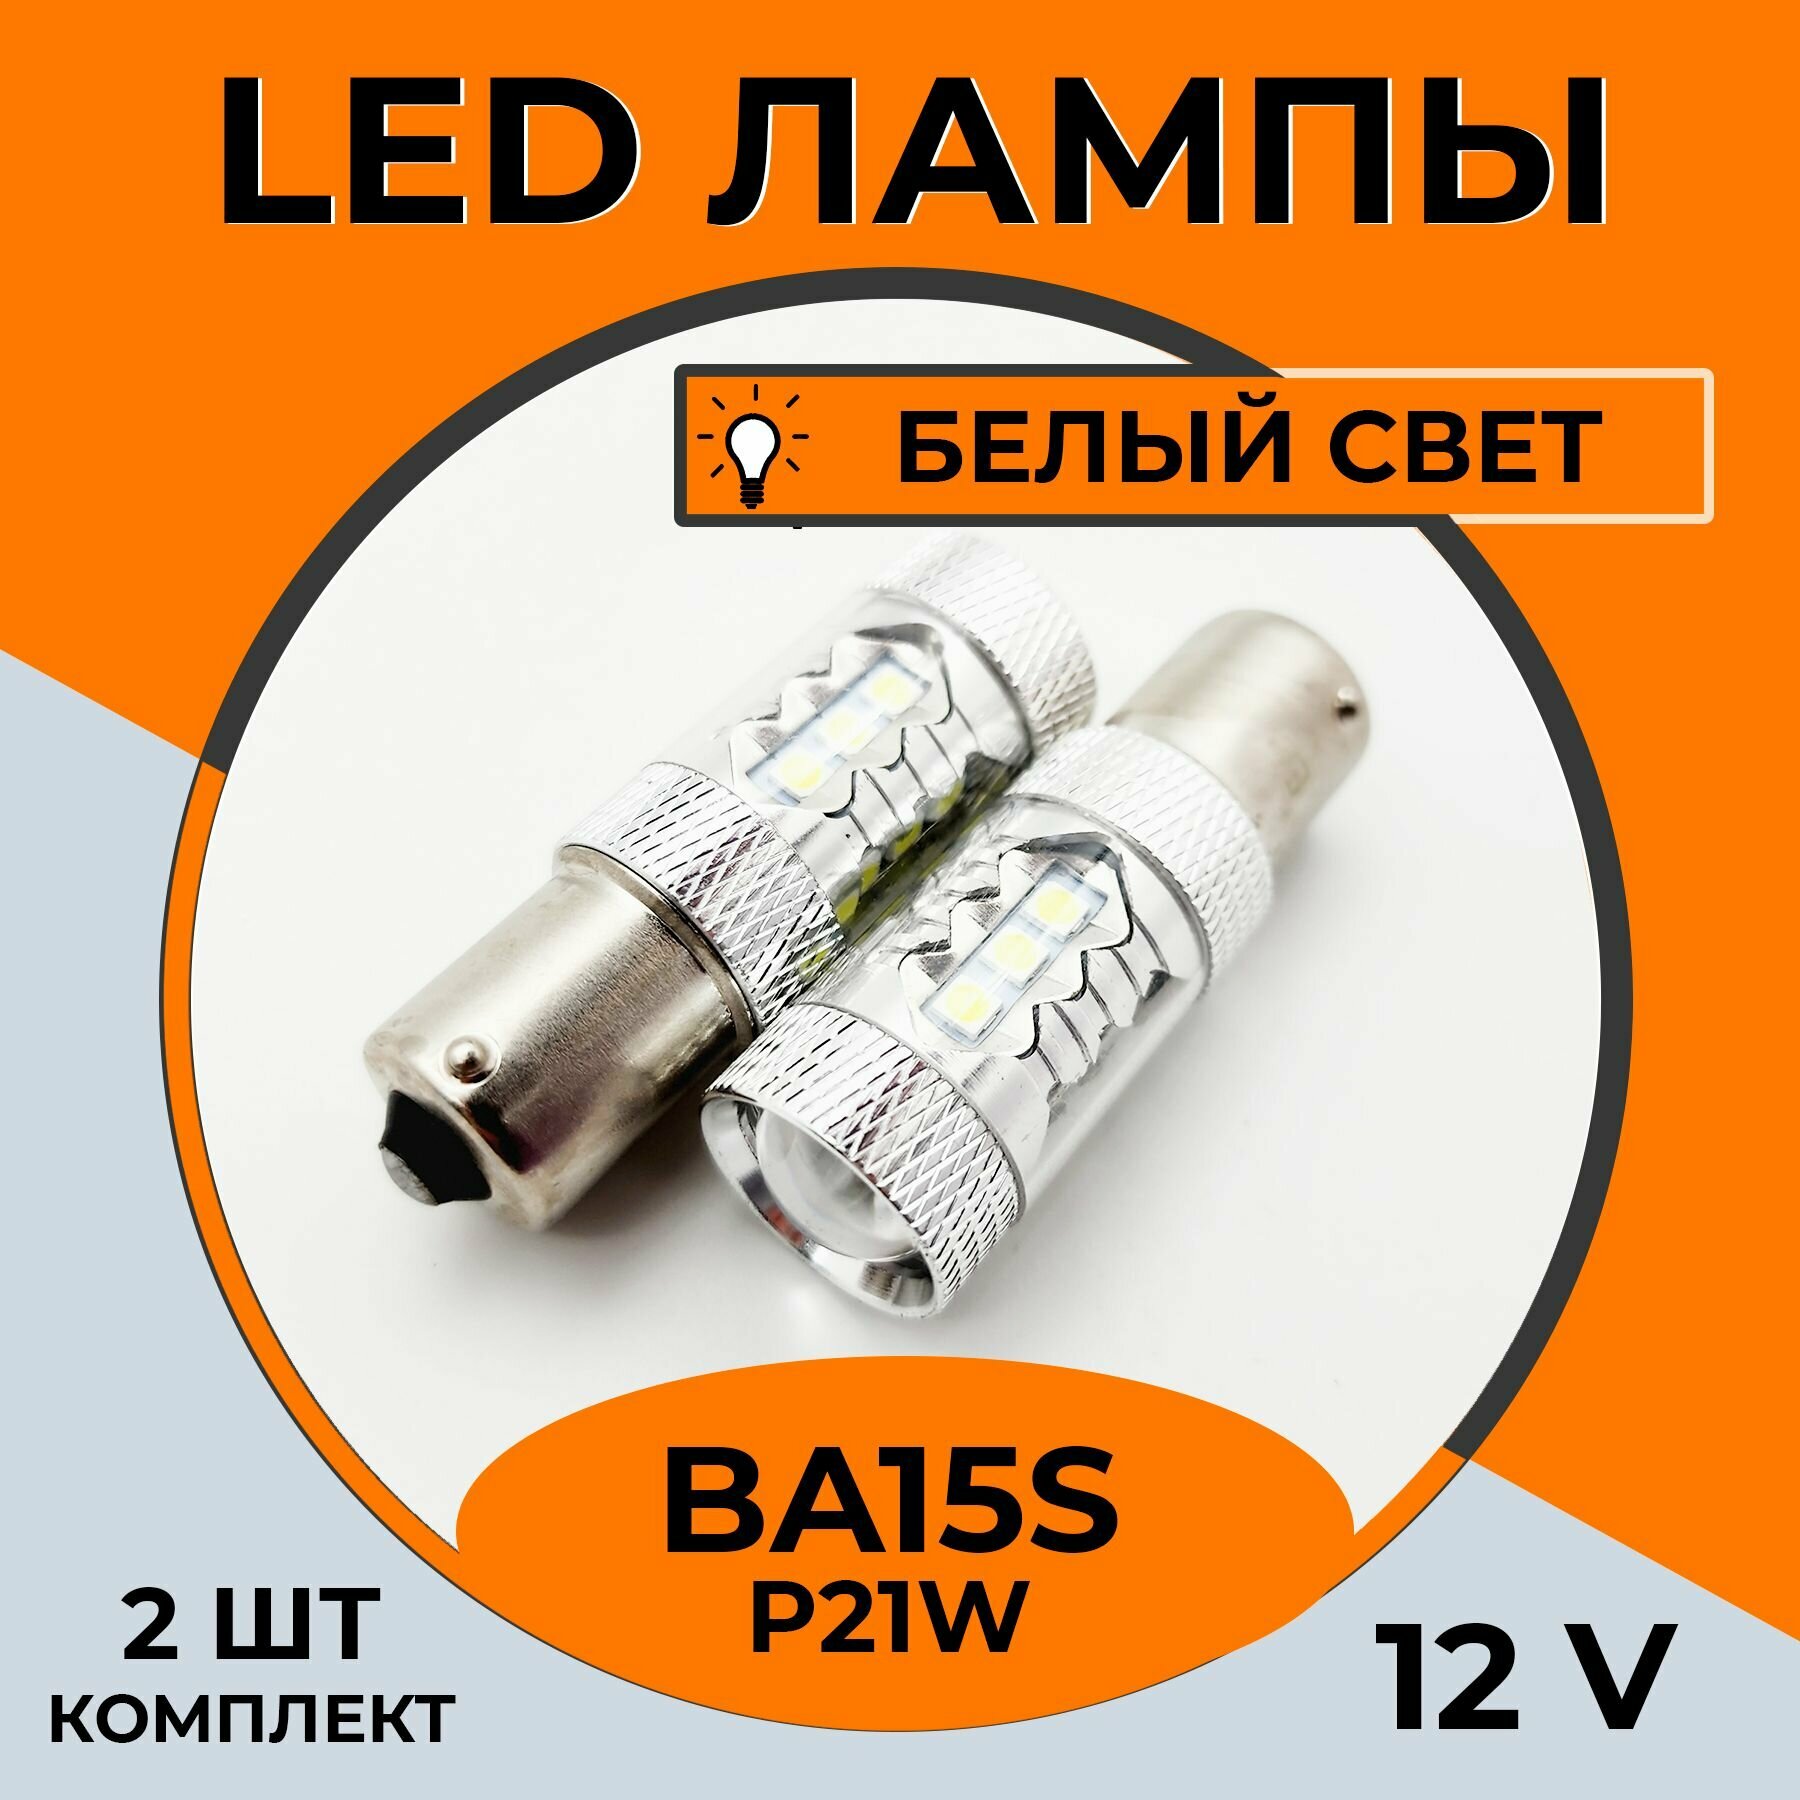 Автомобильная светодиодная LED лампа BA15s P21W для габаритных огней и ДХО, 12в белый свет, 2 шт